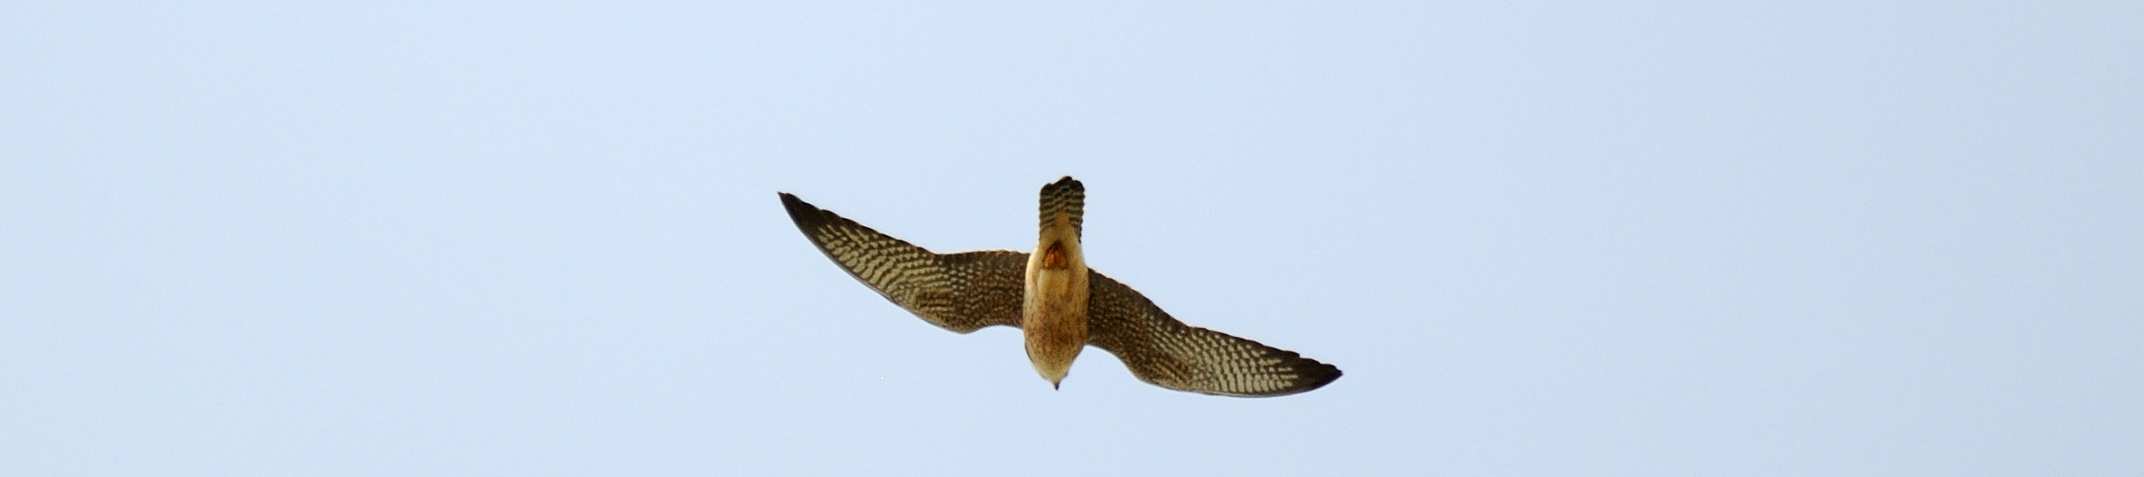 patirrojo (hembra) Falco vespertinus.